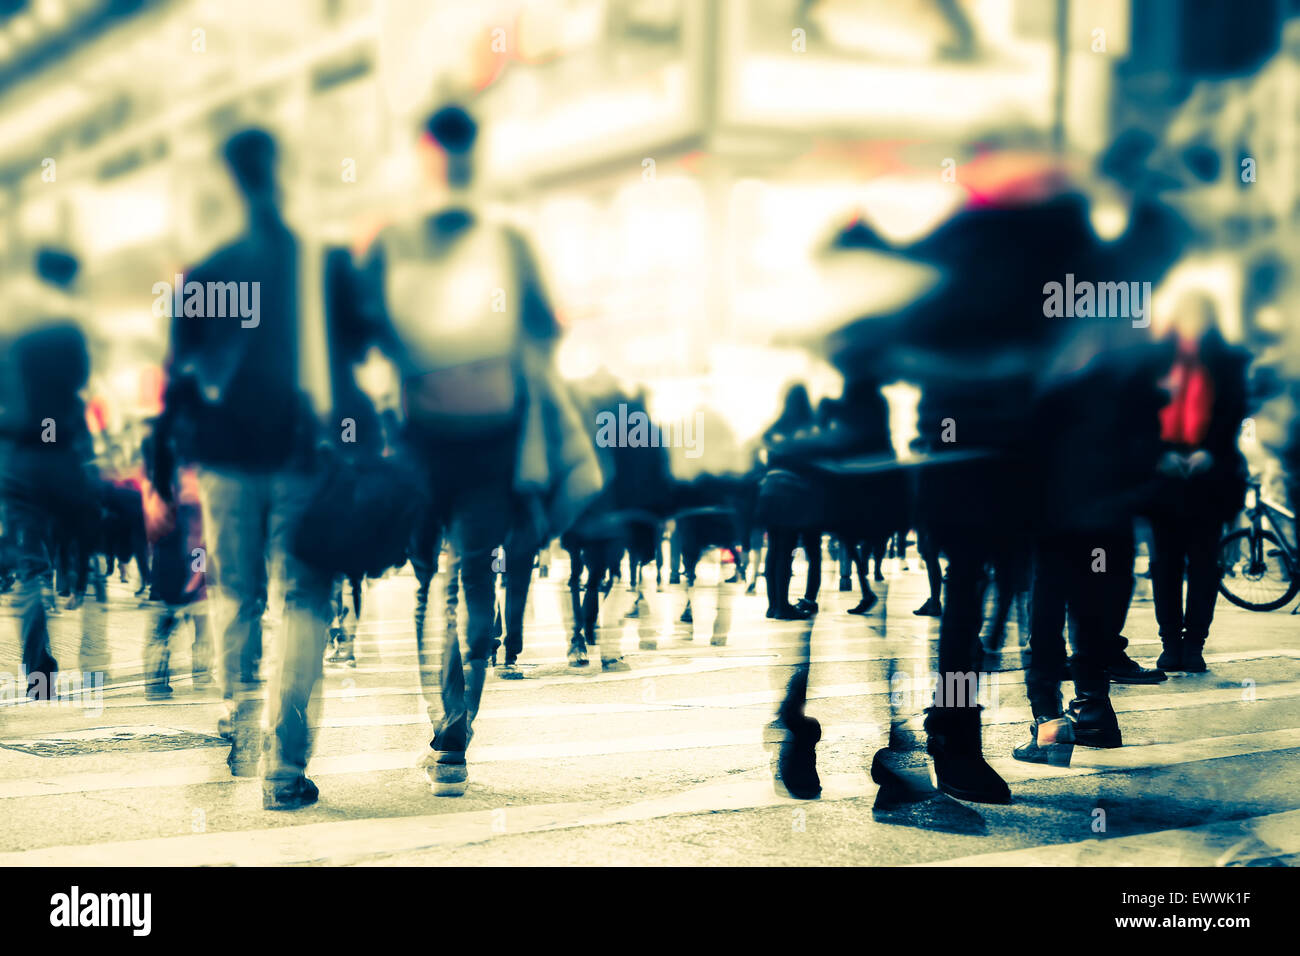 Imagen borrosa de gente moviéndose en las concurridas calles de la ciudad de noche. Tonificación de arte abstracto de fondo urbano. Hong Kong Foto de stock